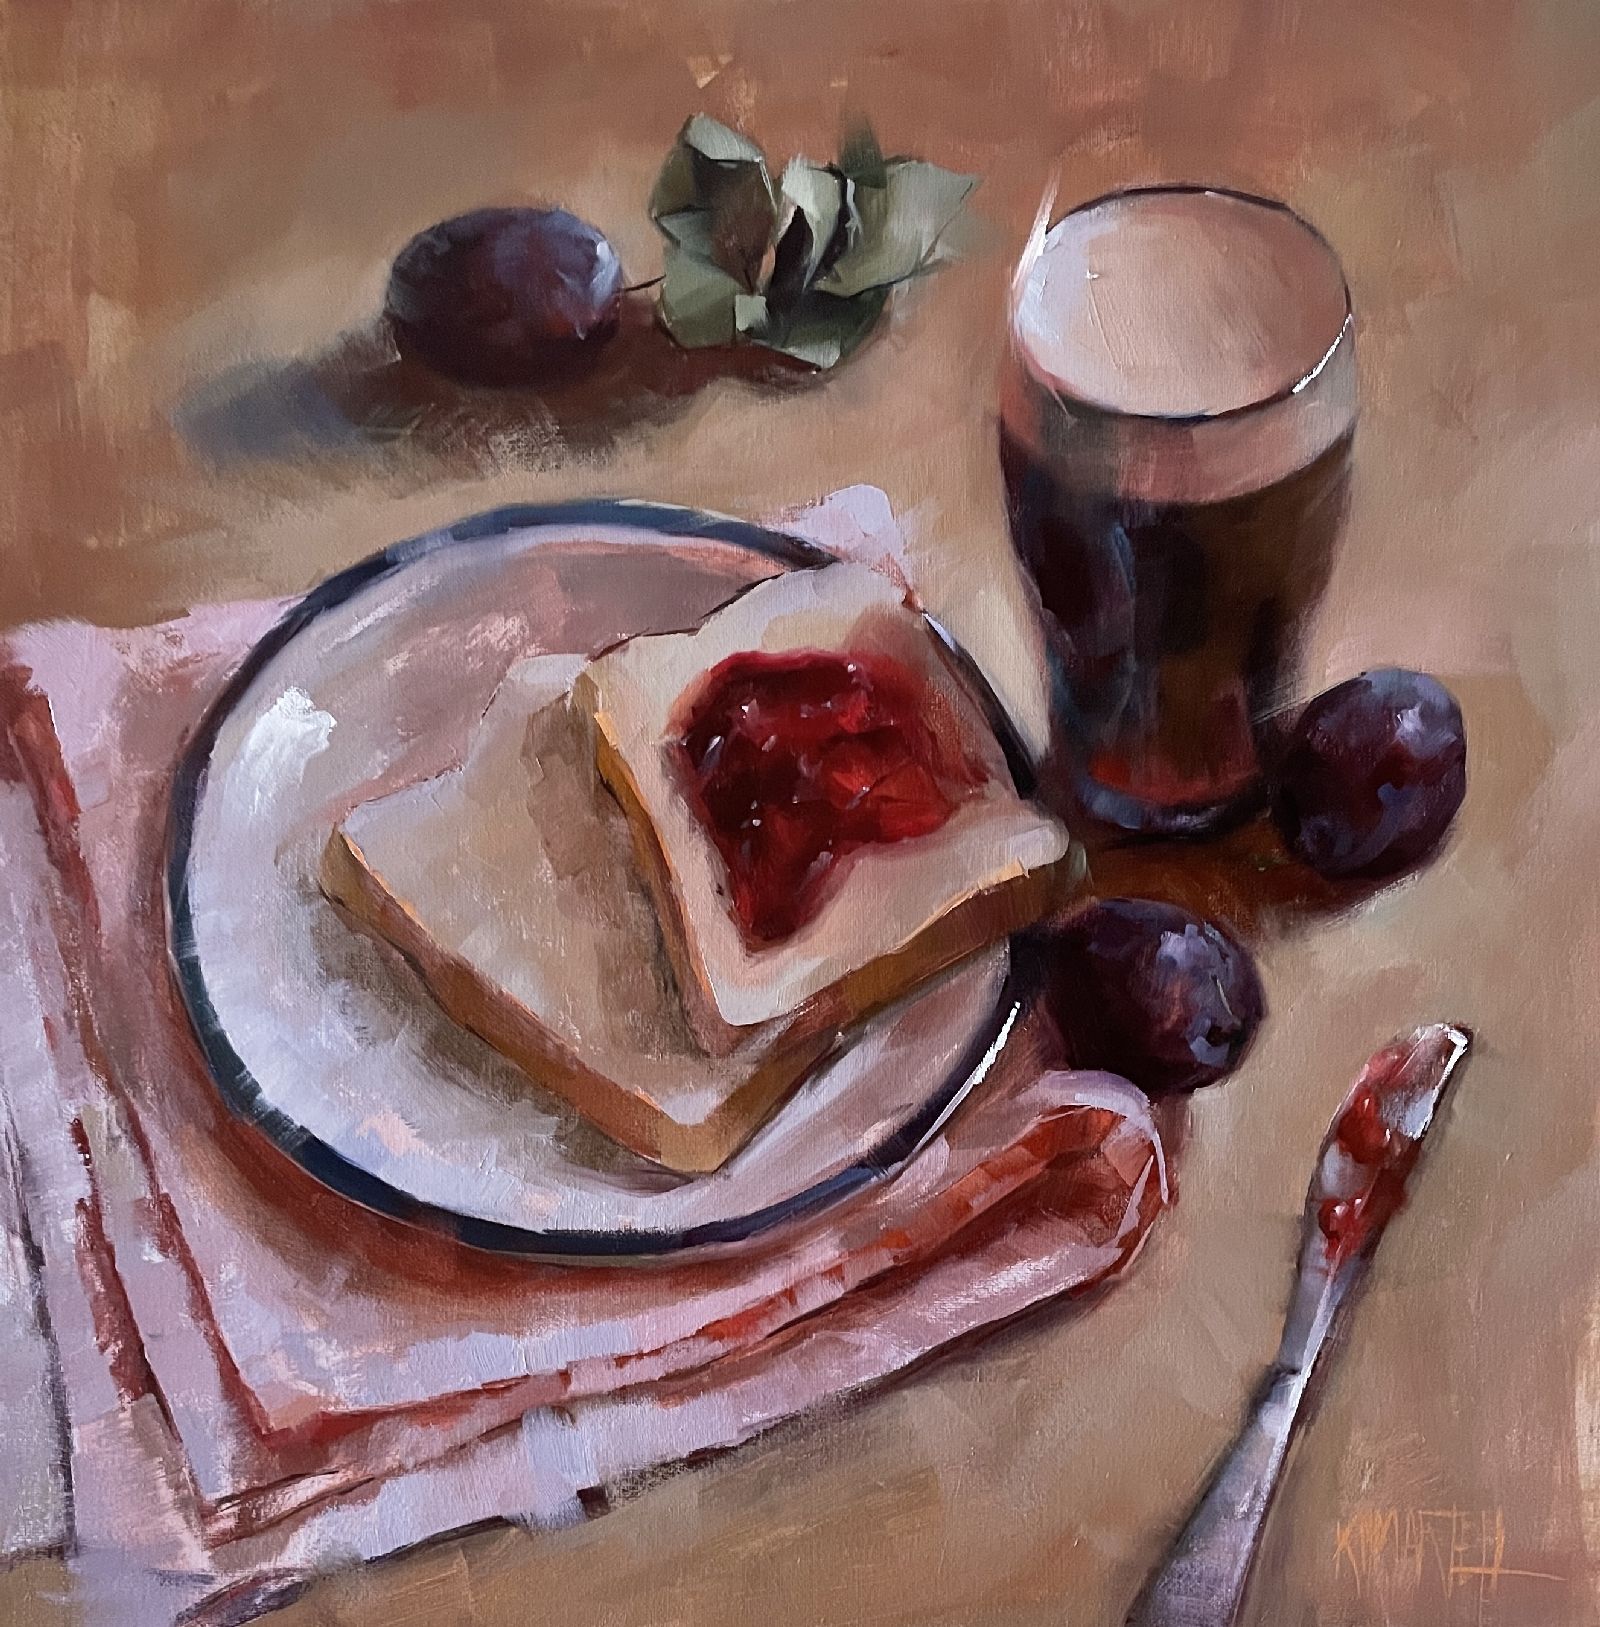 Breakfast of Champions by Kayla Martell